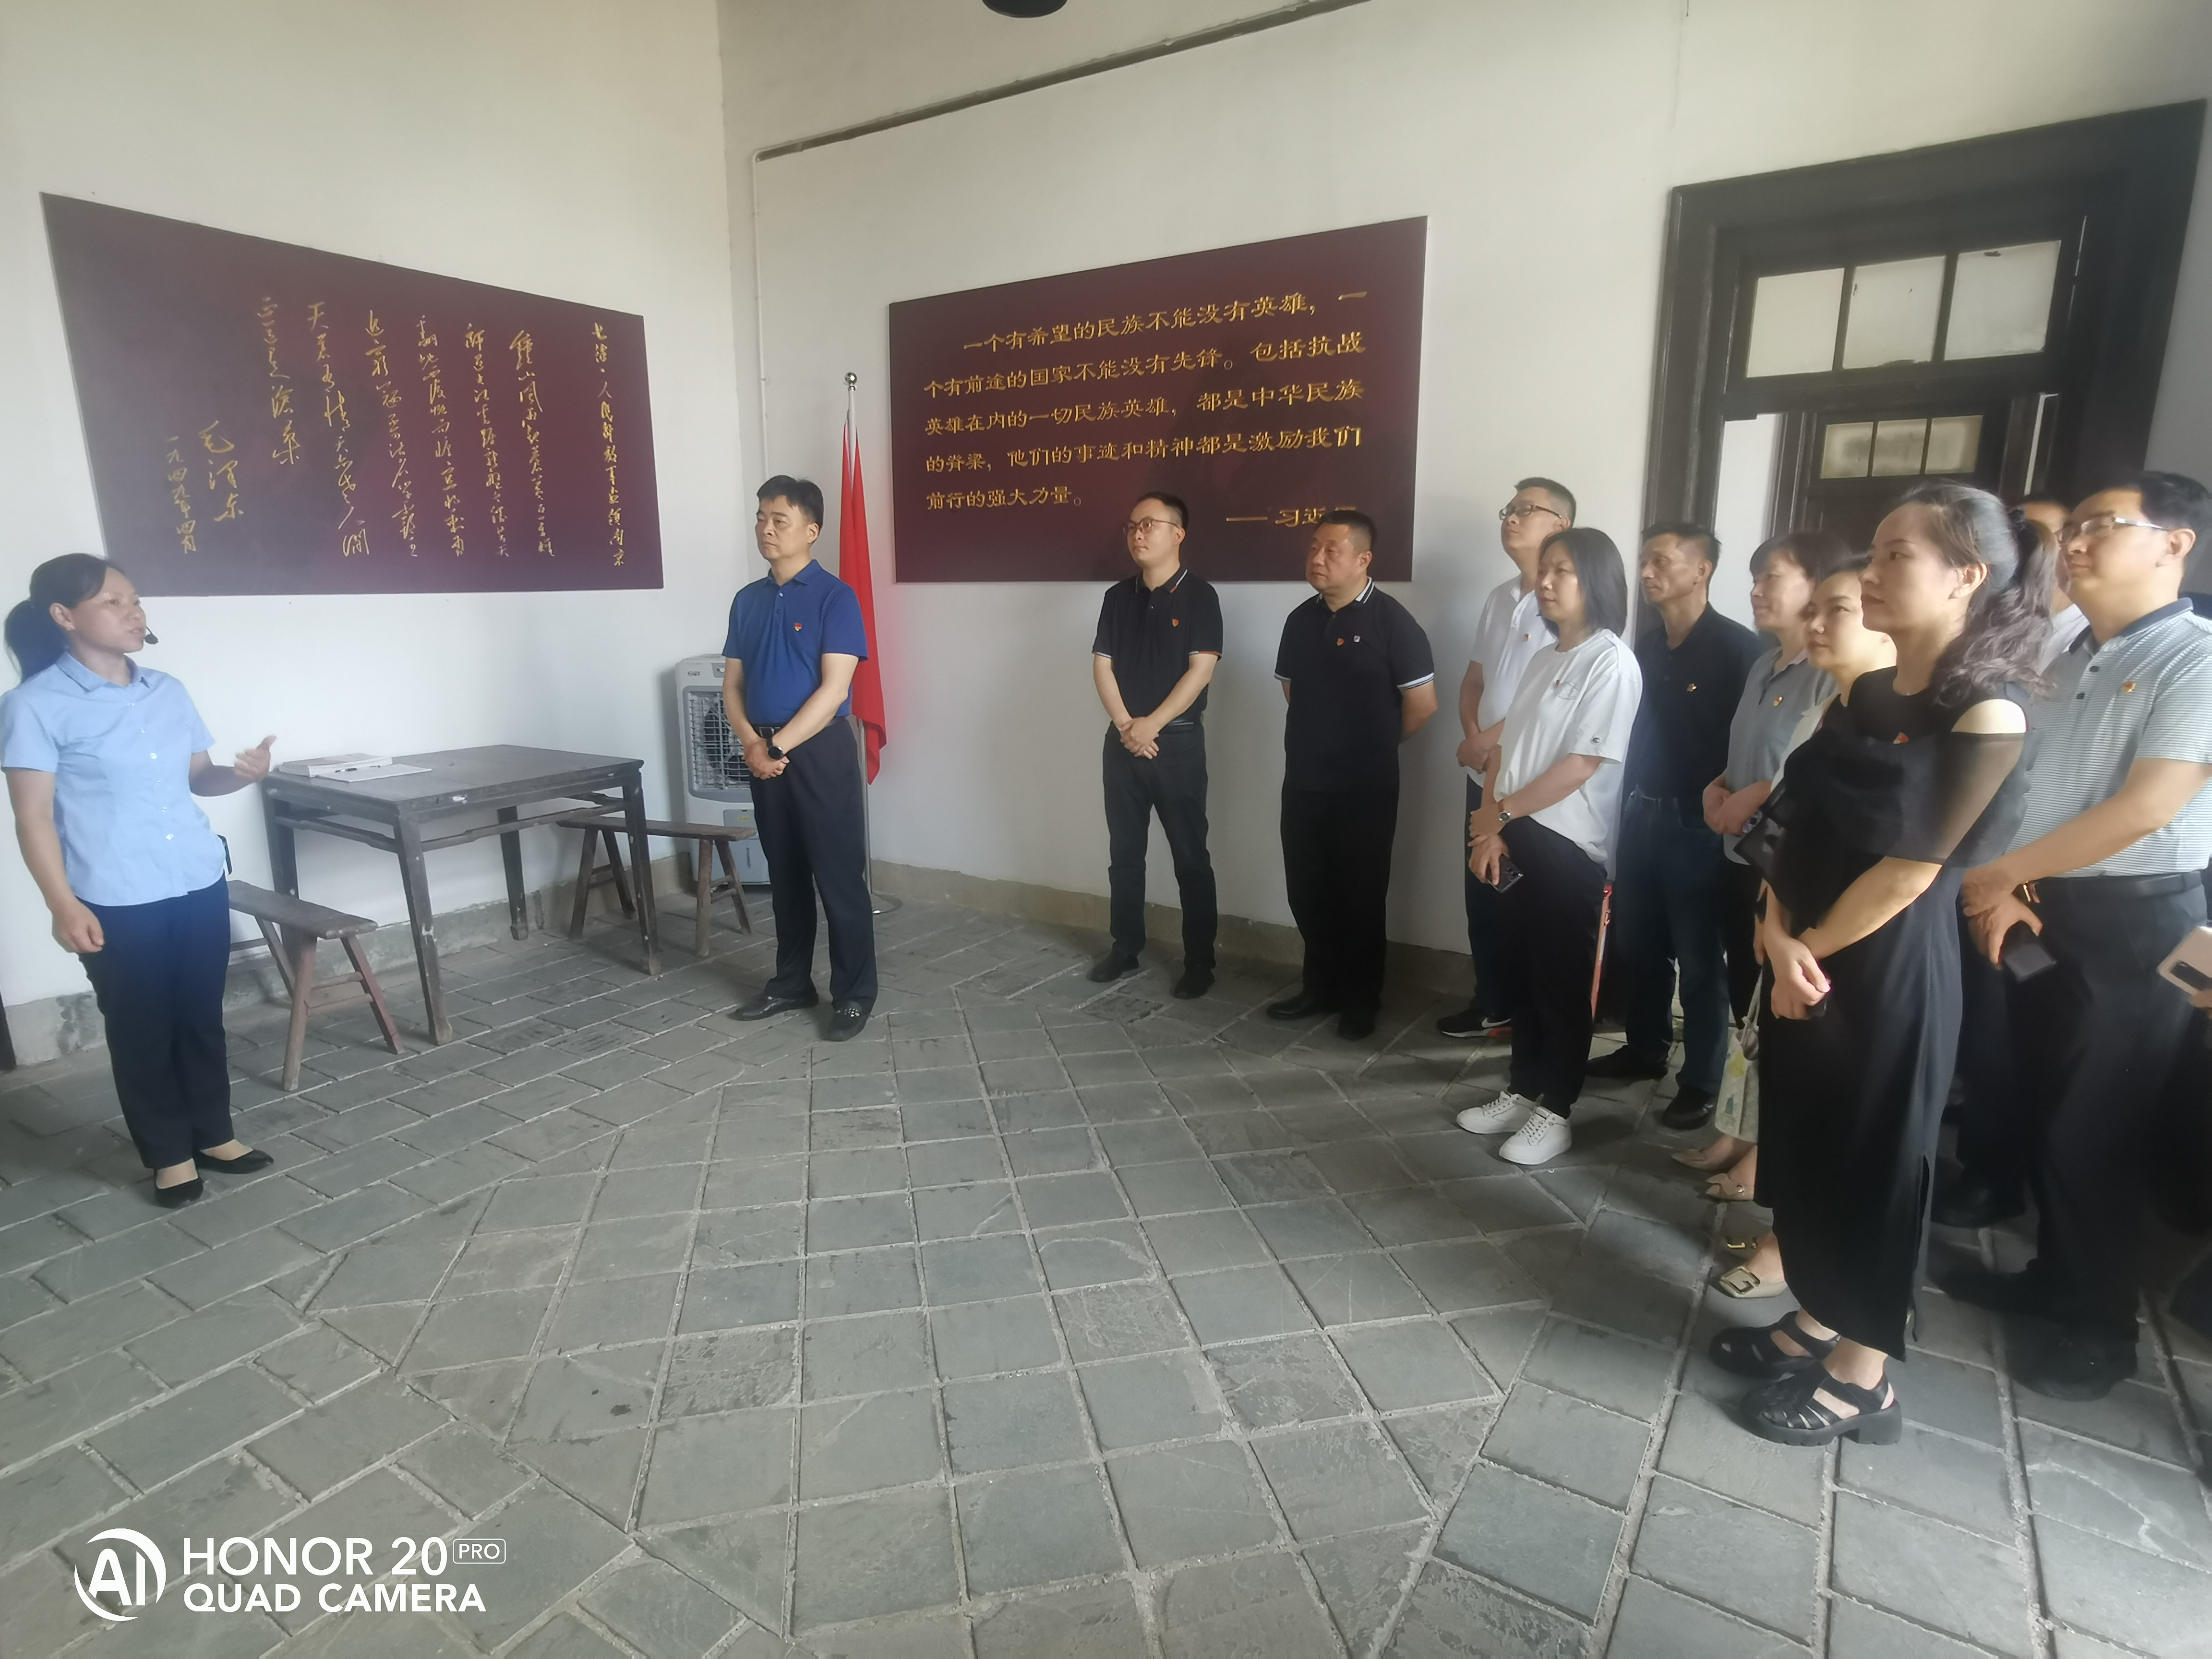 全体党员参观学习湖南和平解放秘密电台工作站旧址